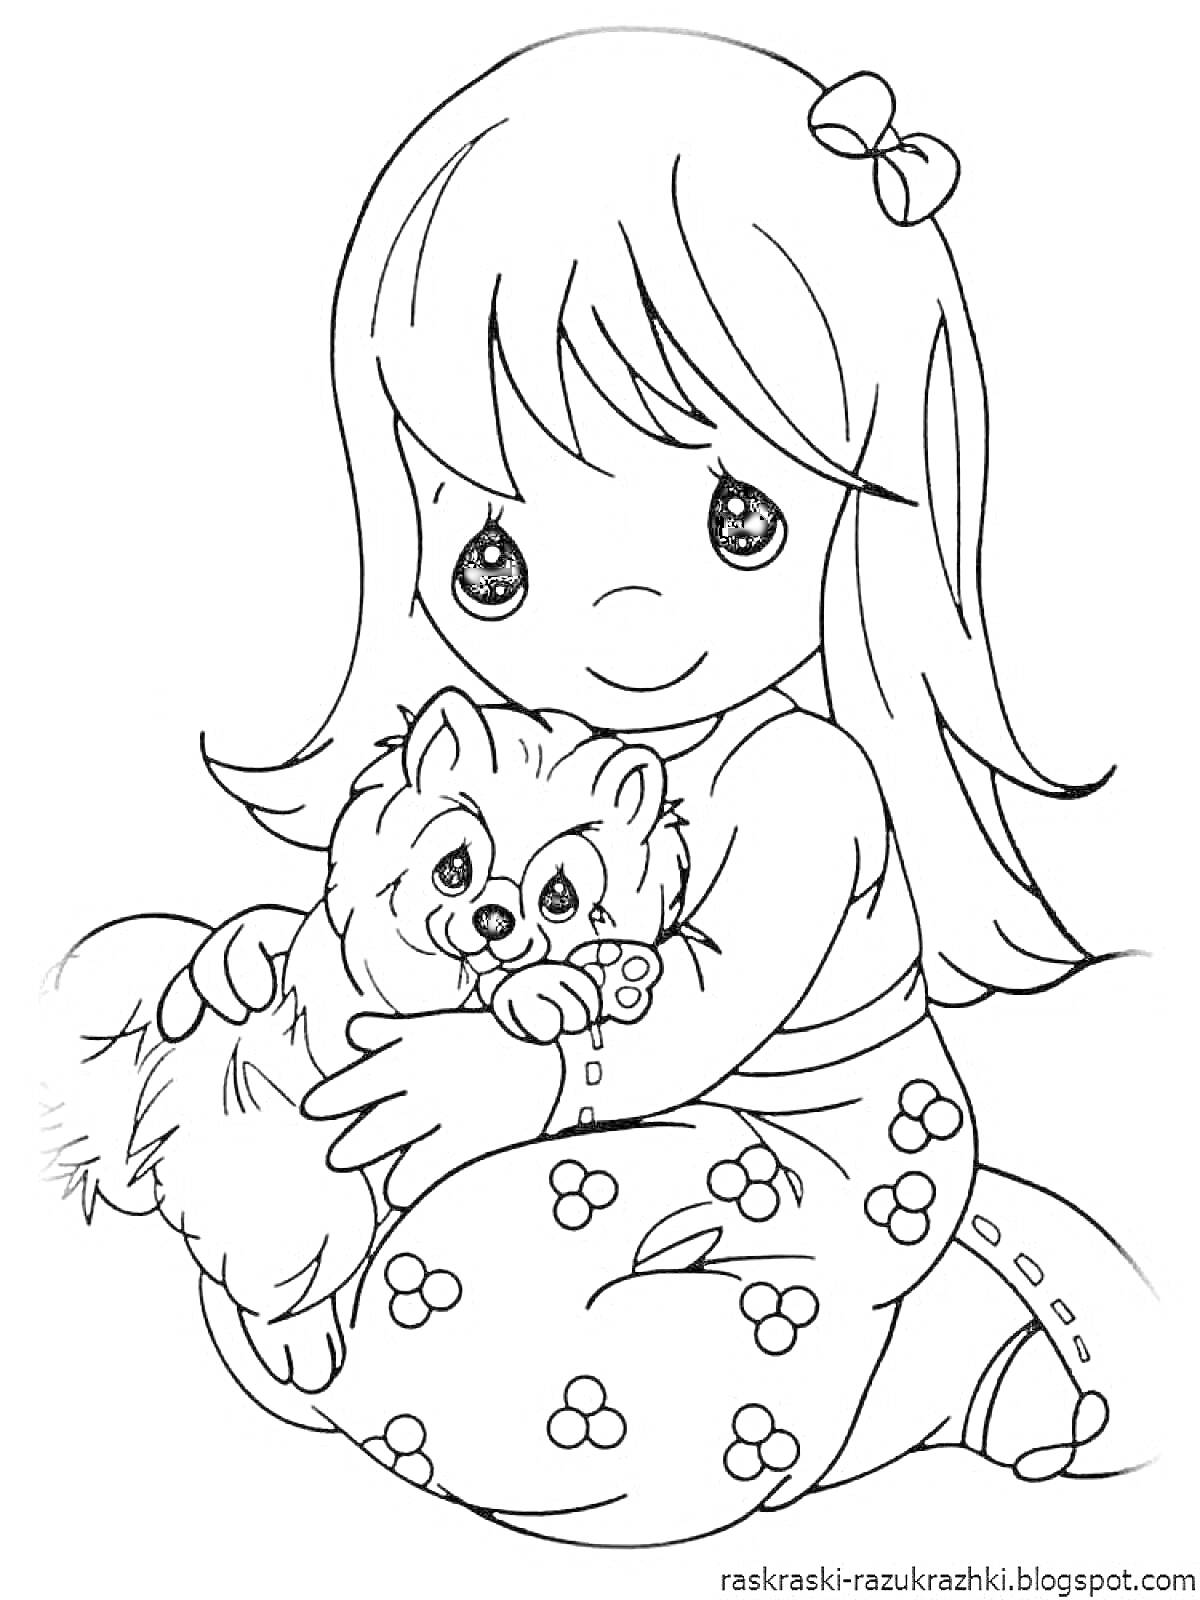 Раскраска Девочка с длинными волосами в платье с цветочным узором, держащая собачку